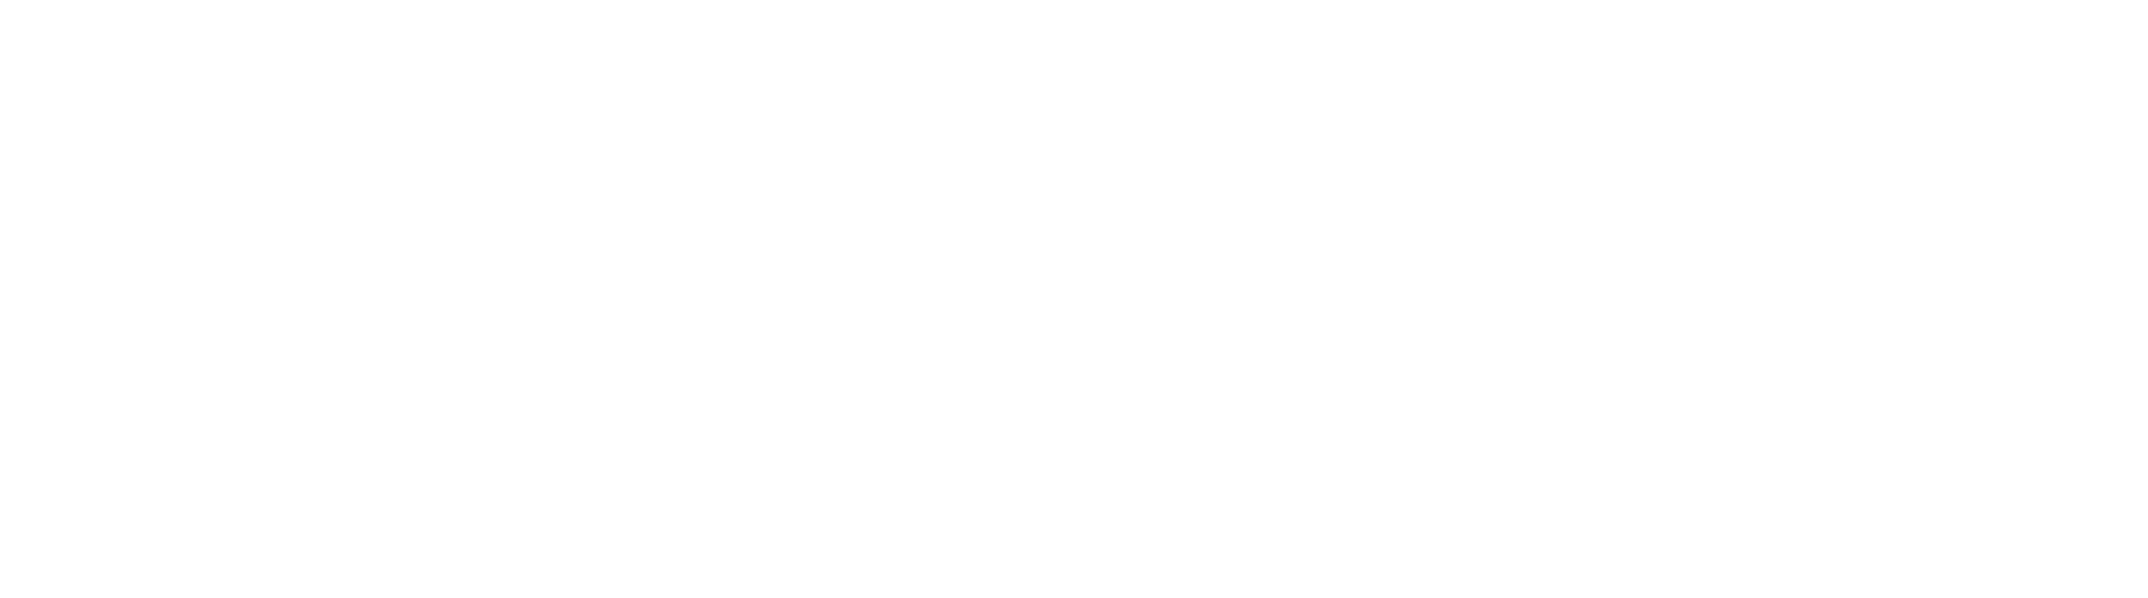 Easypark brand logo